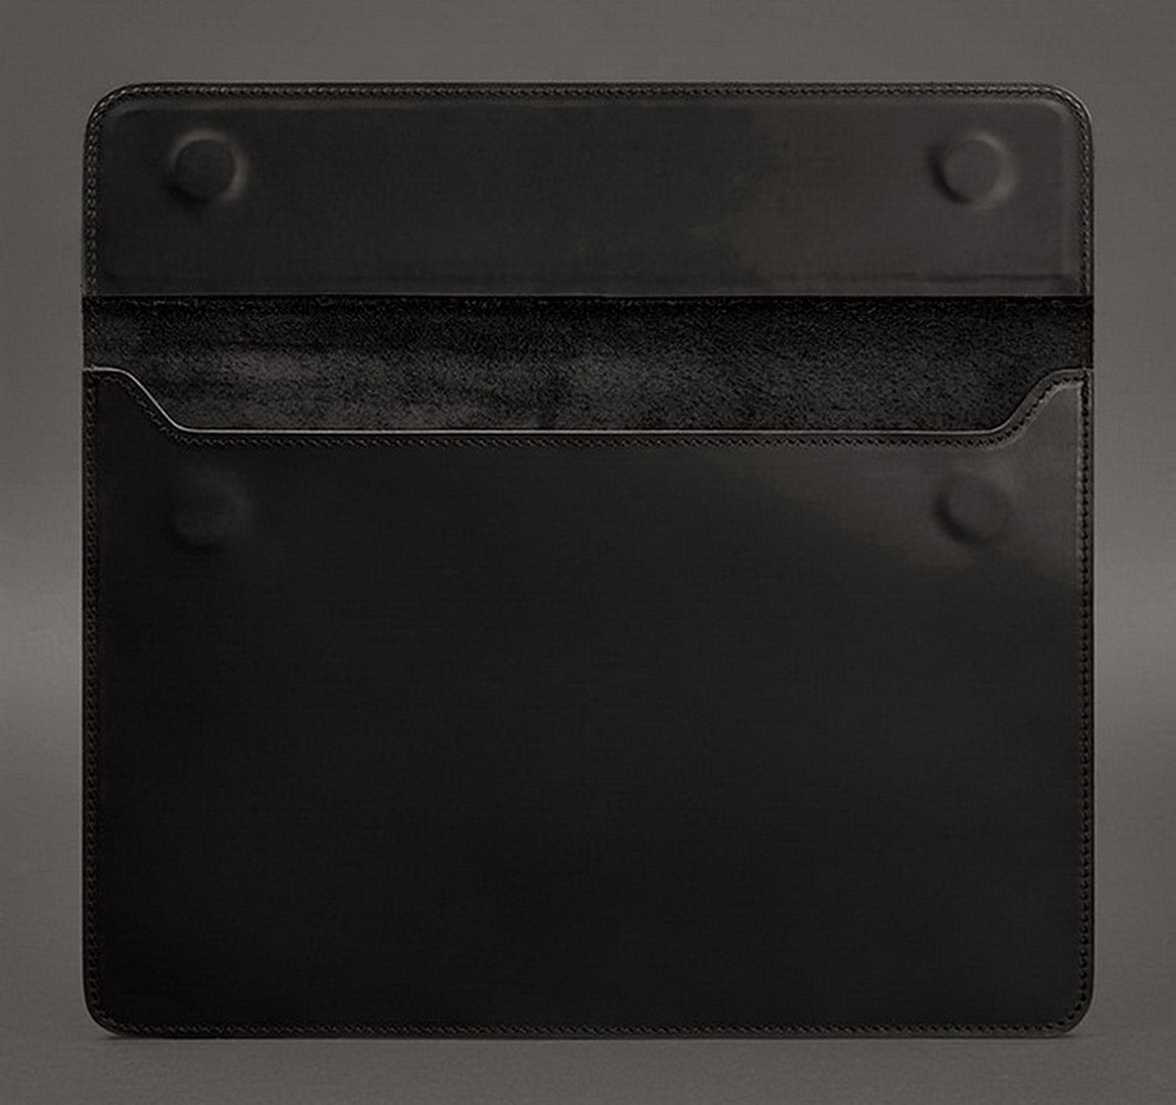 Чехол для macbook pro 13 air 13 черный. Натуральная кожа.